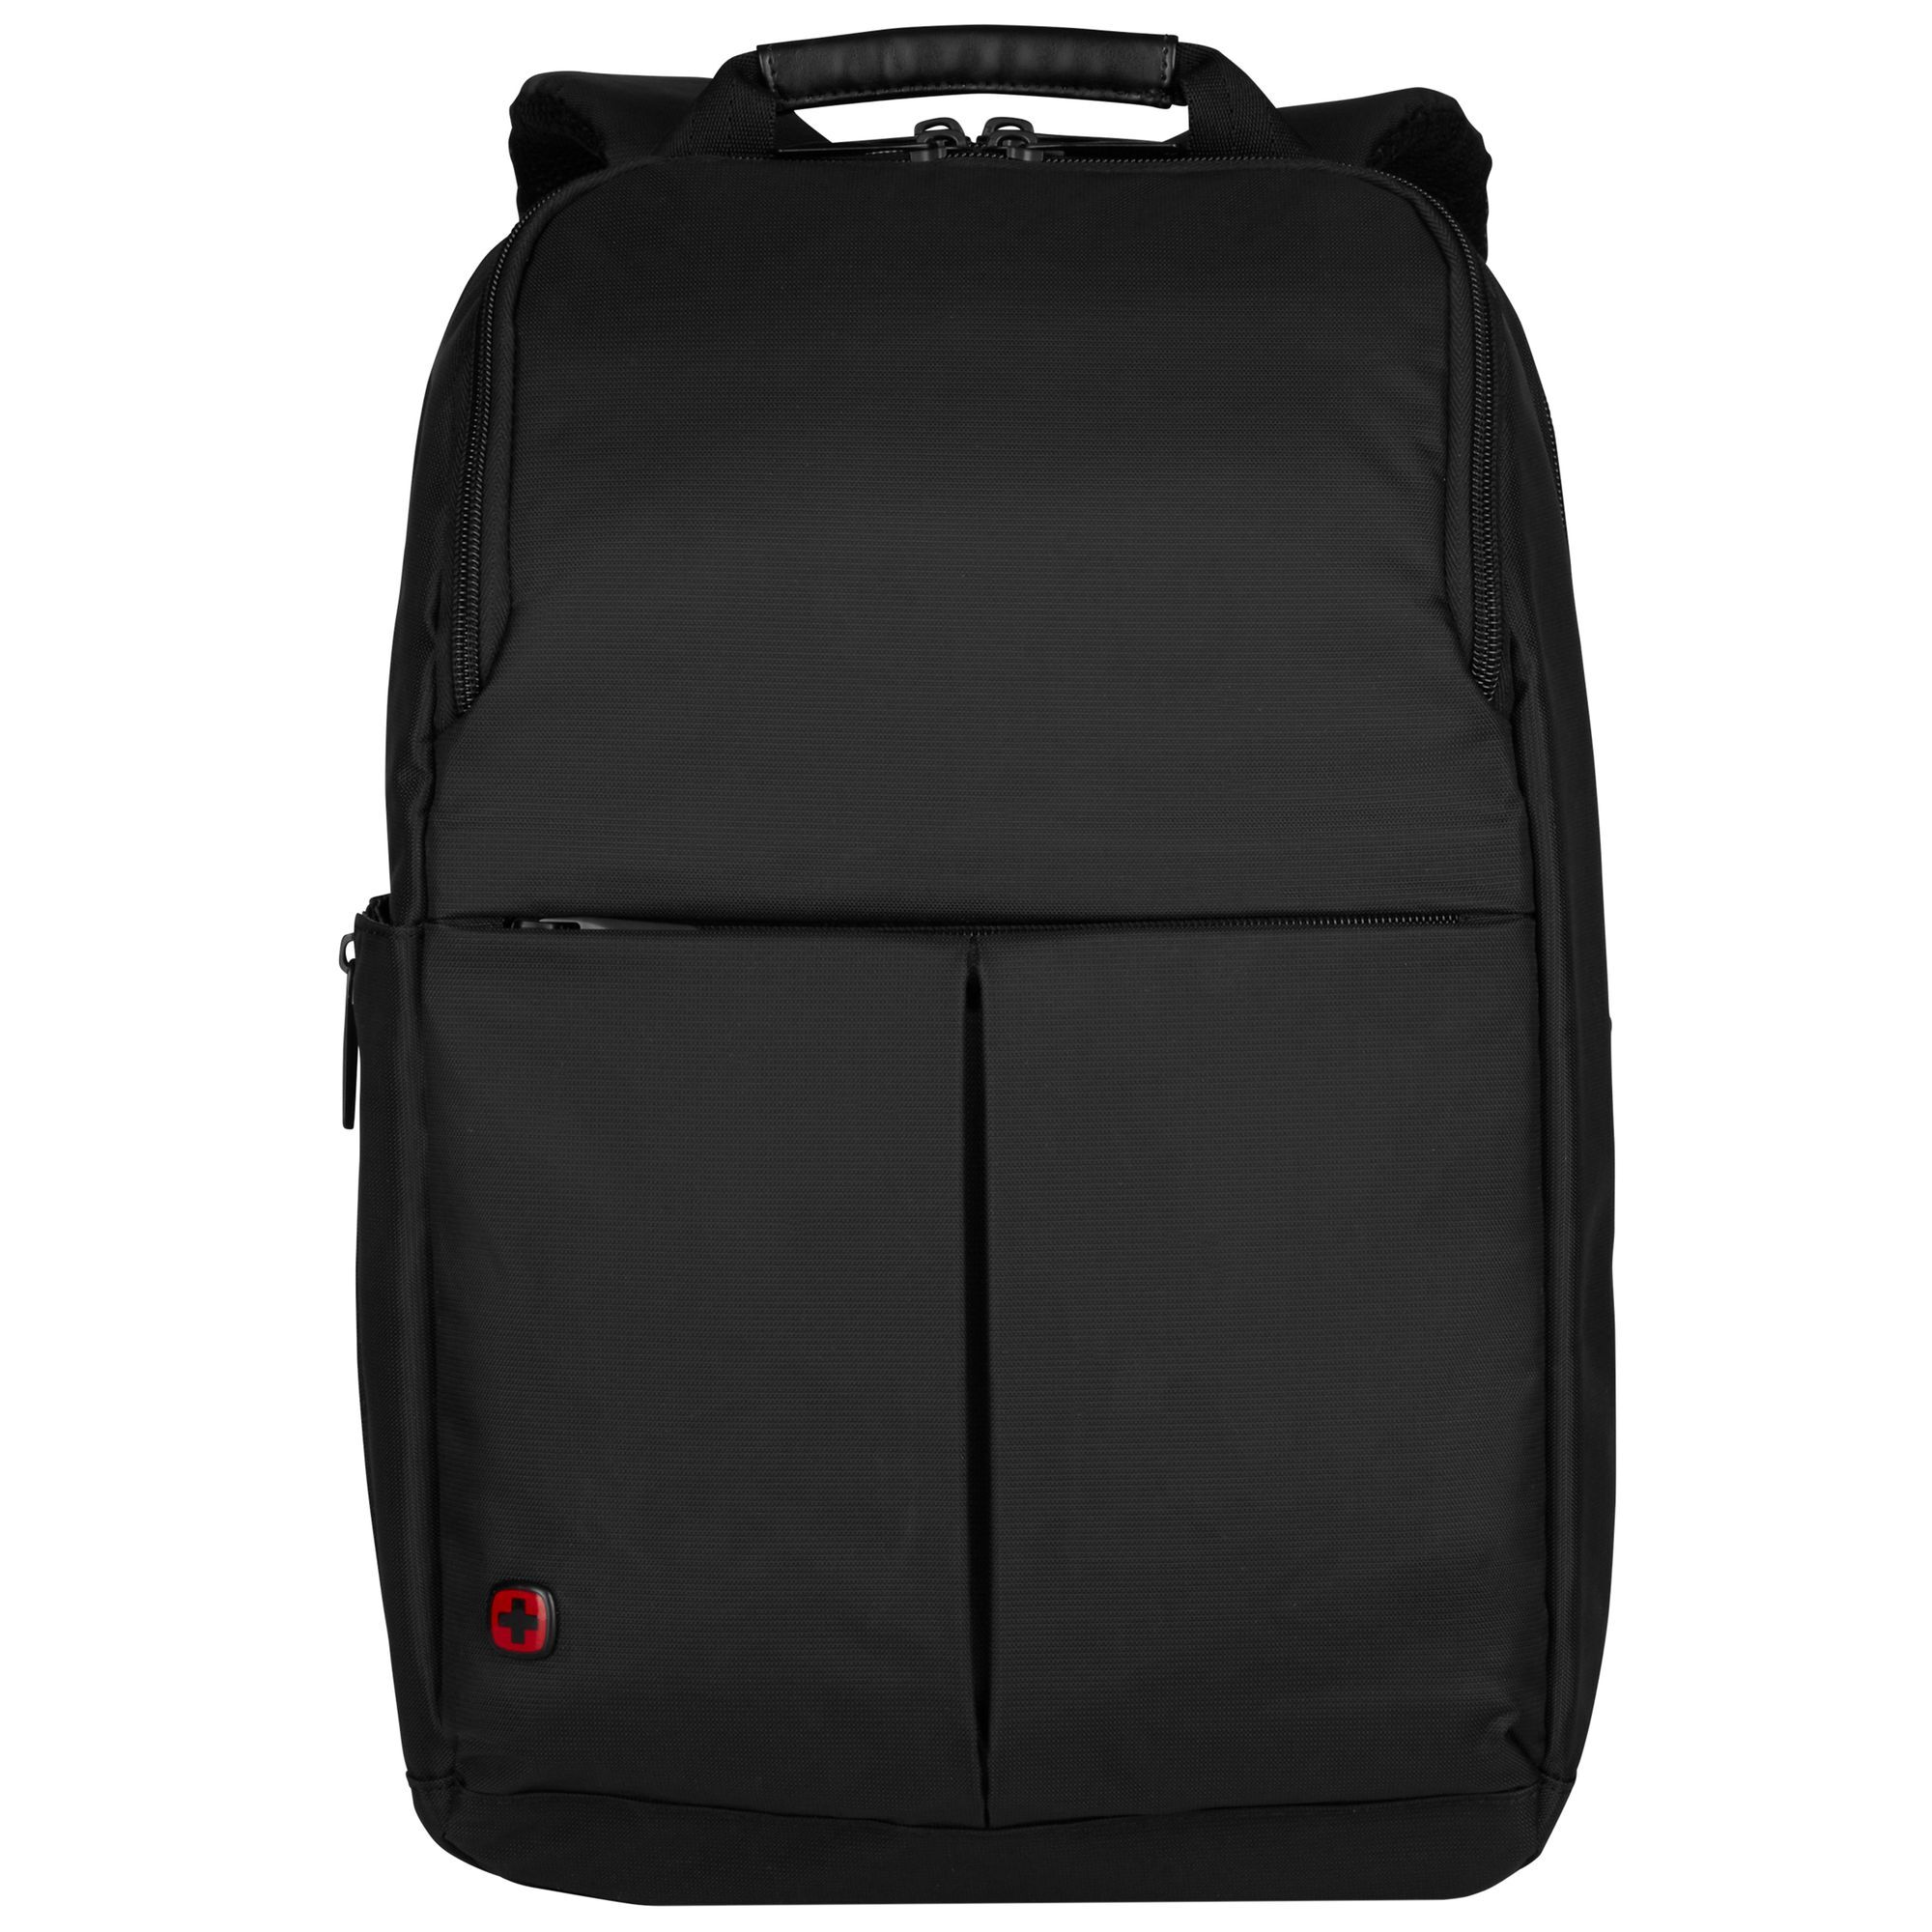 Рюкзак Wenger Reload 14 42 cm Laptopfach, черный рюкзак wenger reload 14 42 cm laptopfach черный